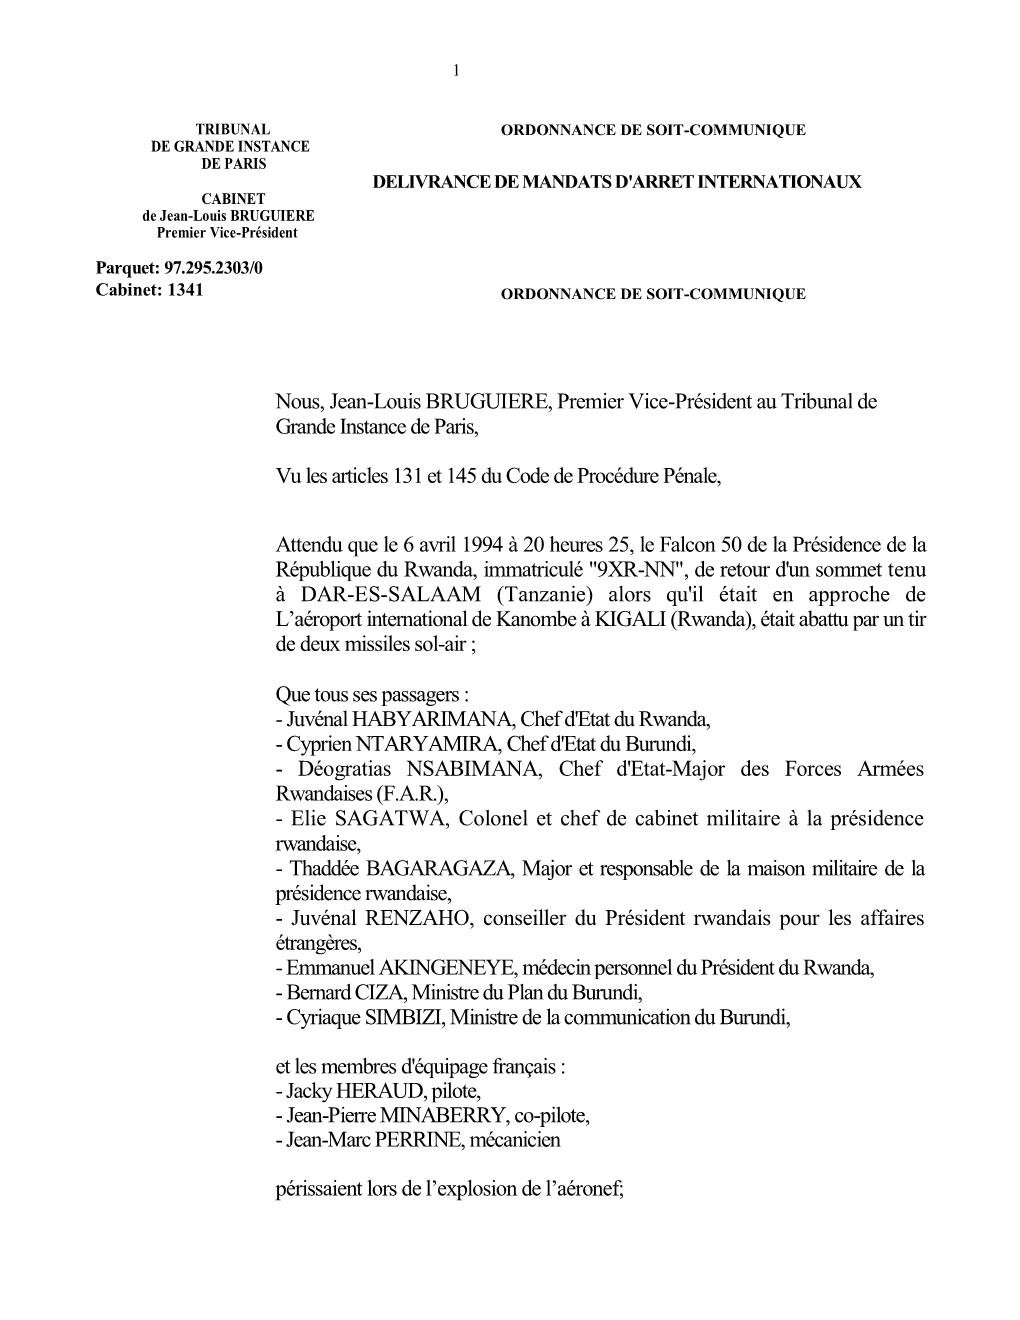 DELIVRANCE DE MANDATS D'arret INTERNATIONAUX CABINET De Jean-Louis BRUGUIERE Premier Vice-Président Parquet: 97.295.2303/0 Cabinet: 1341 ORDONNANCE DE SOIT-COMMUNIQUE